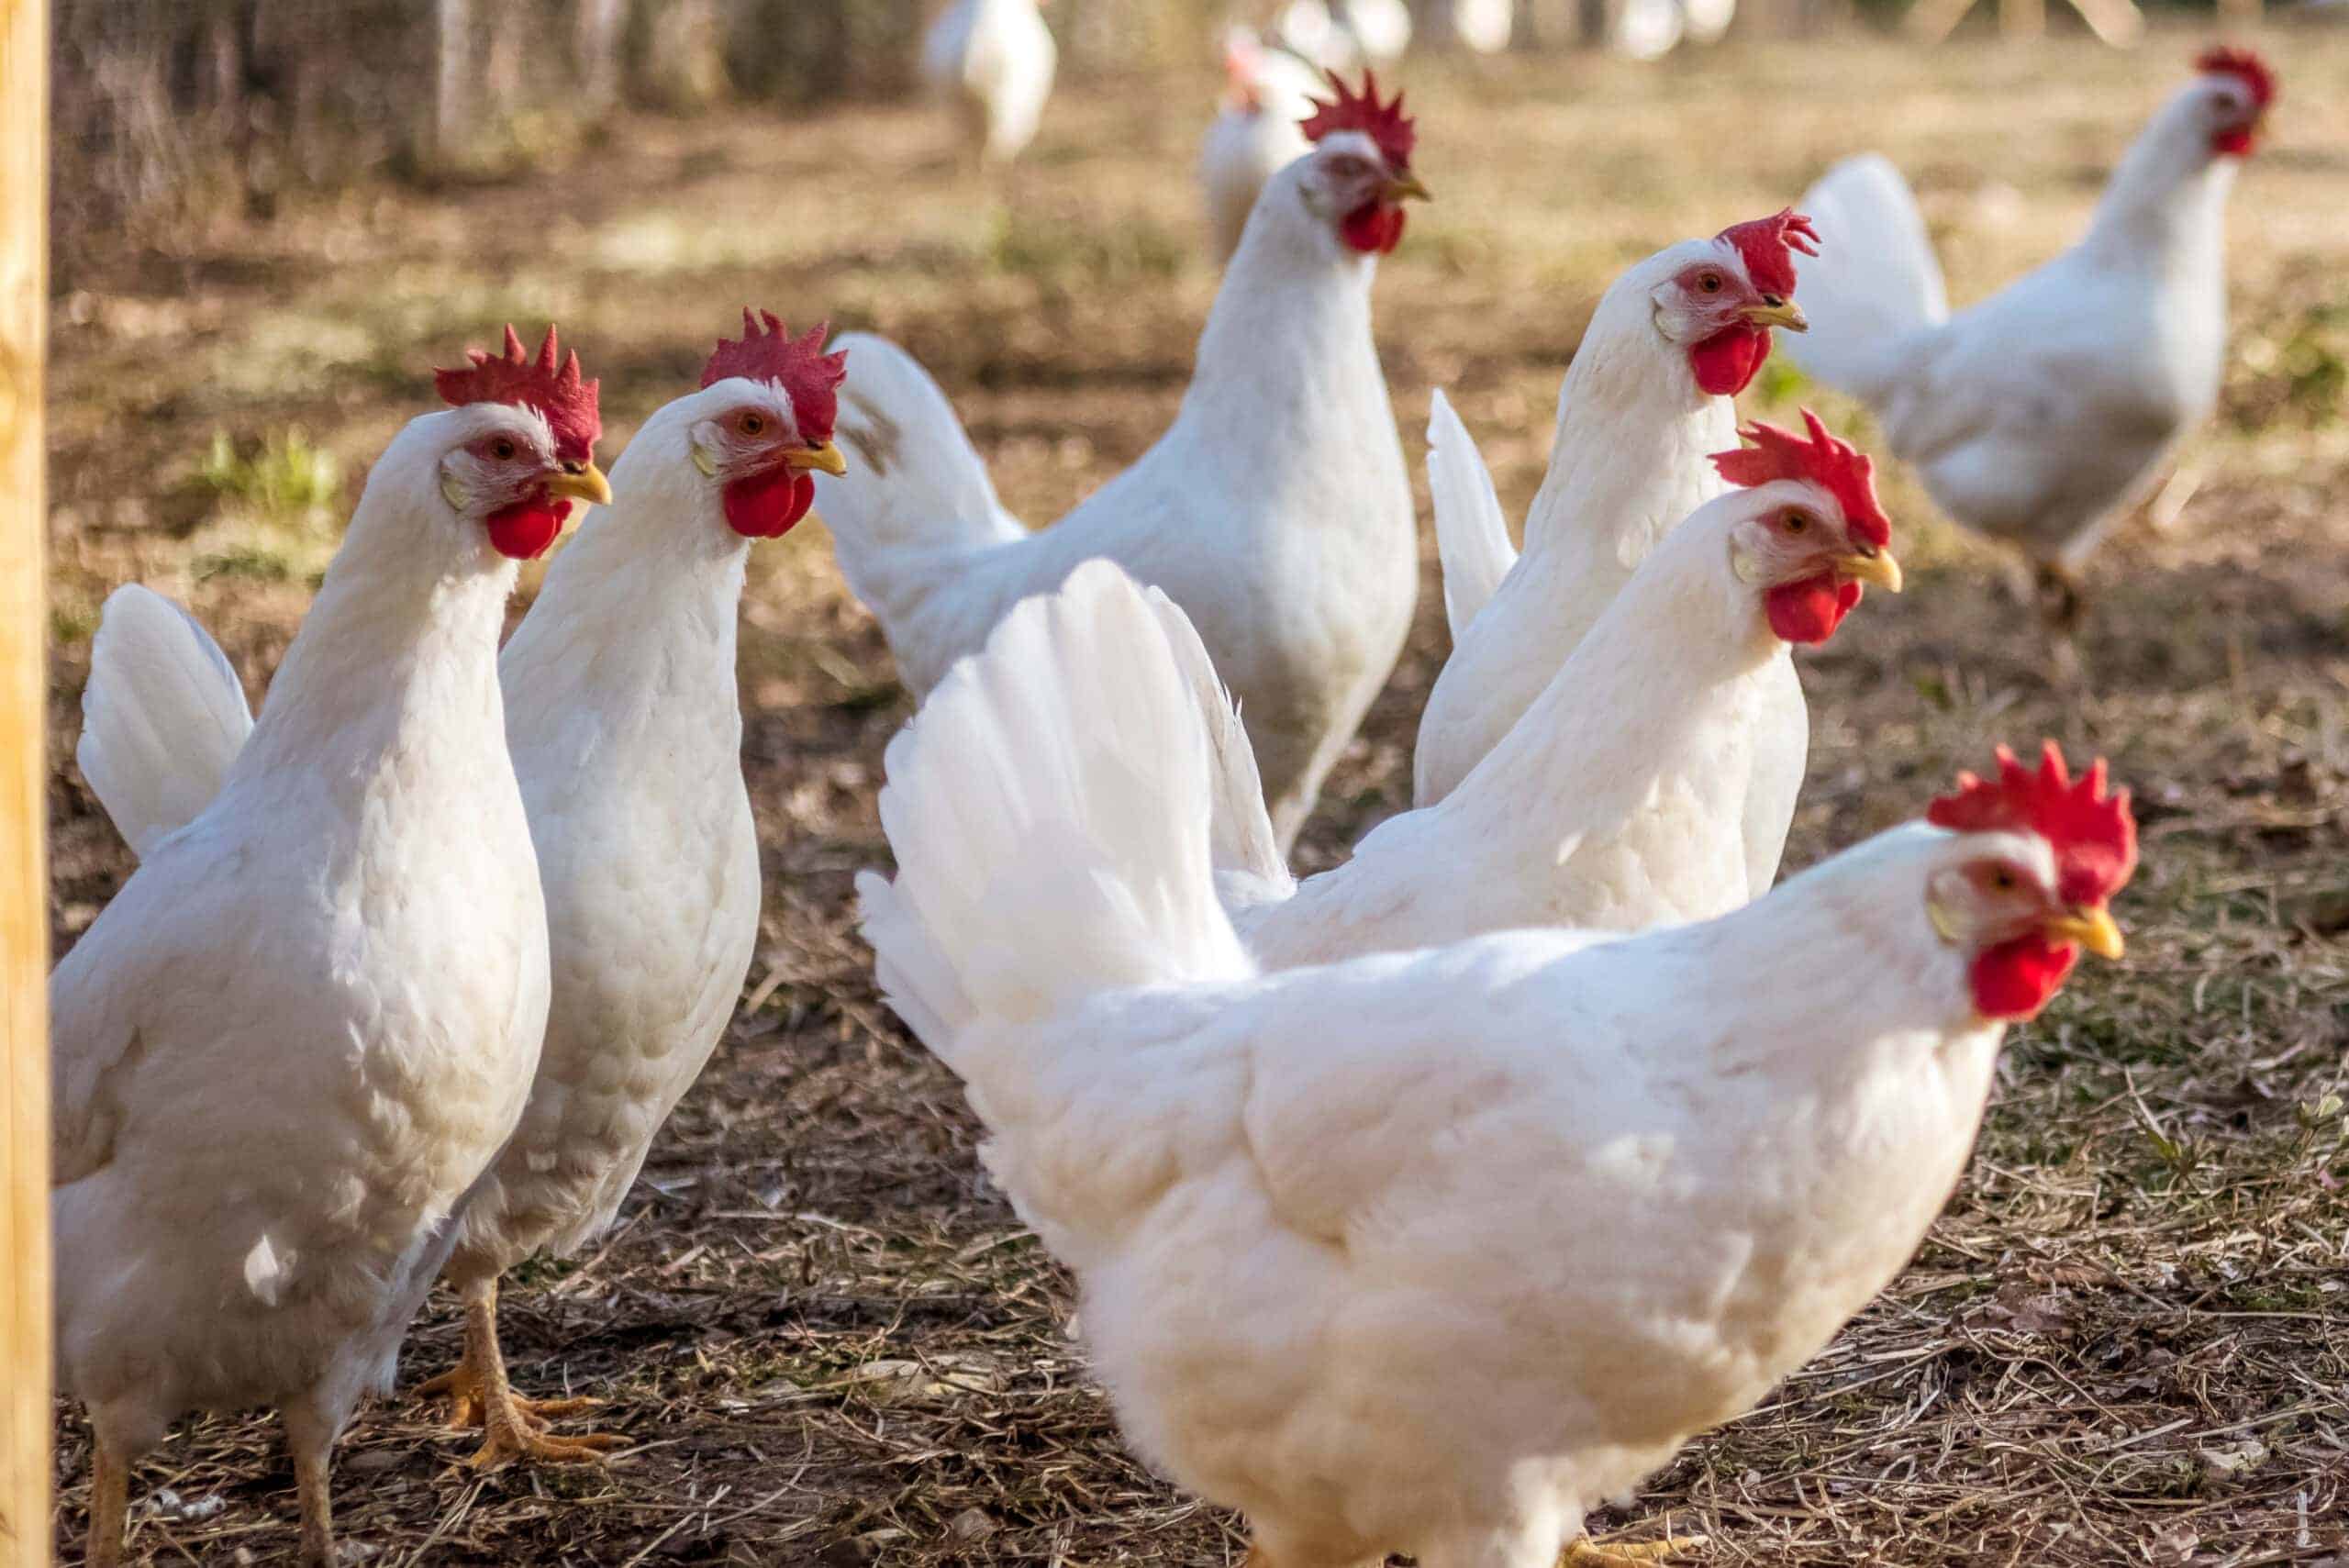 Many Leghorn chicken in a free range farming_Jay-Dee_Shutterstock